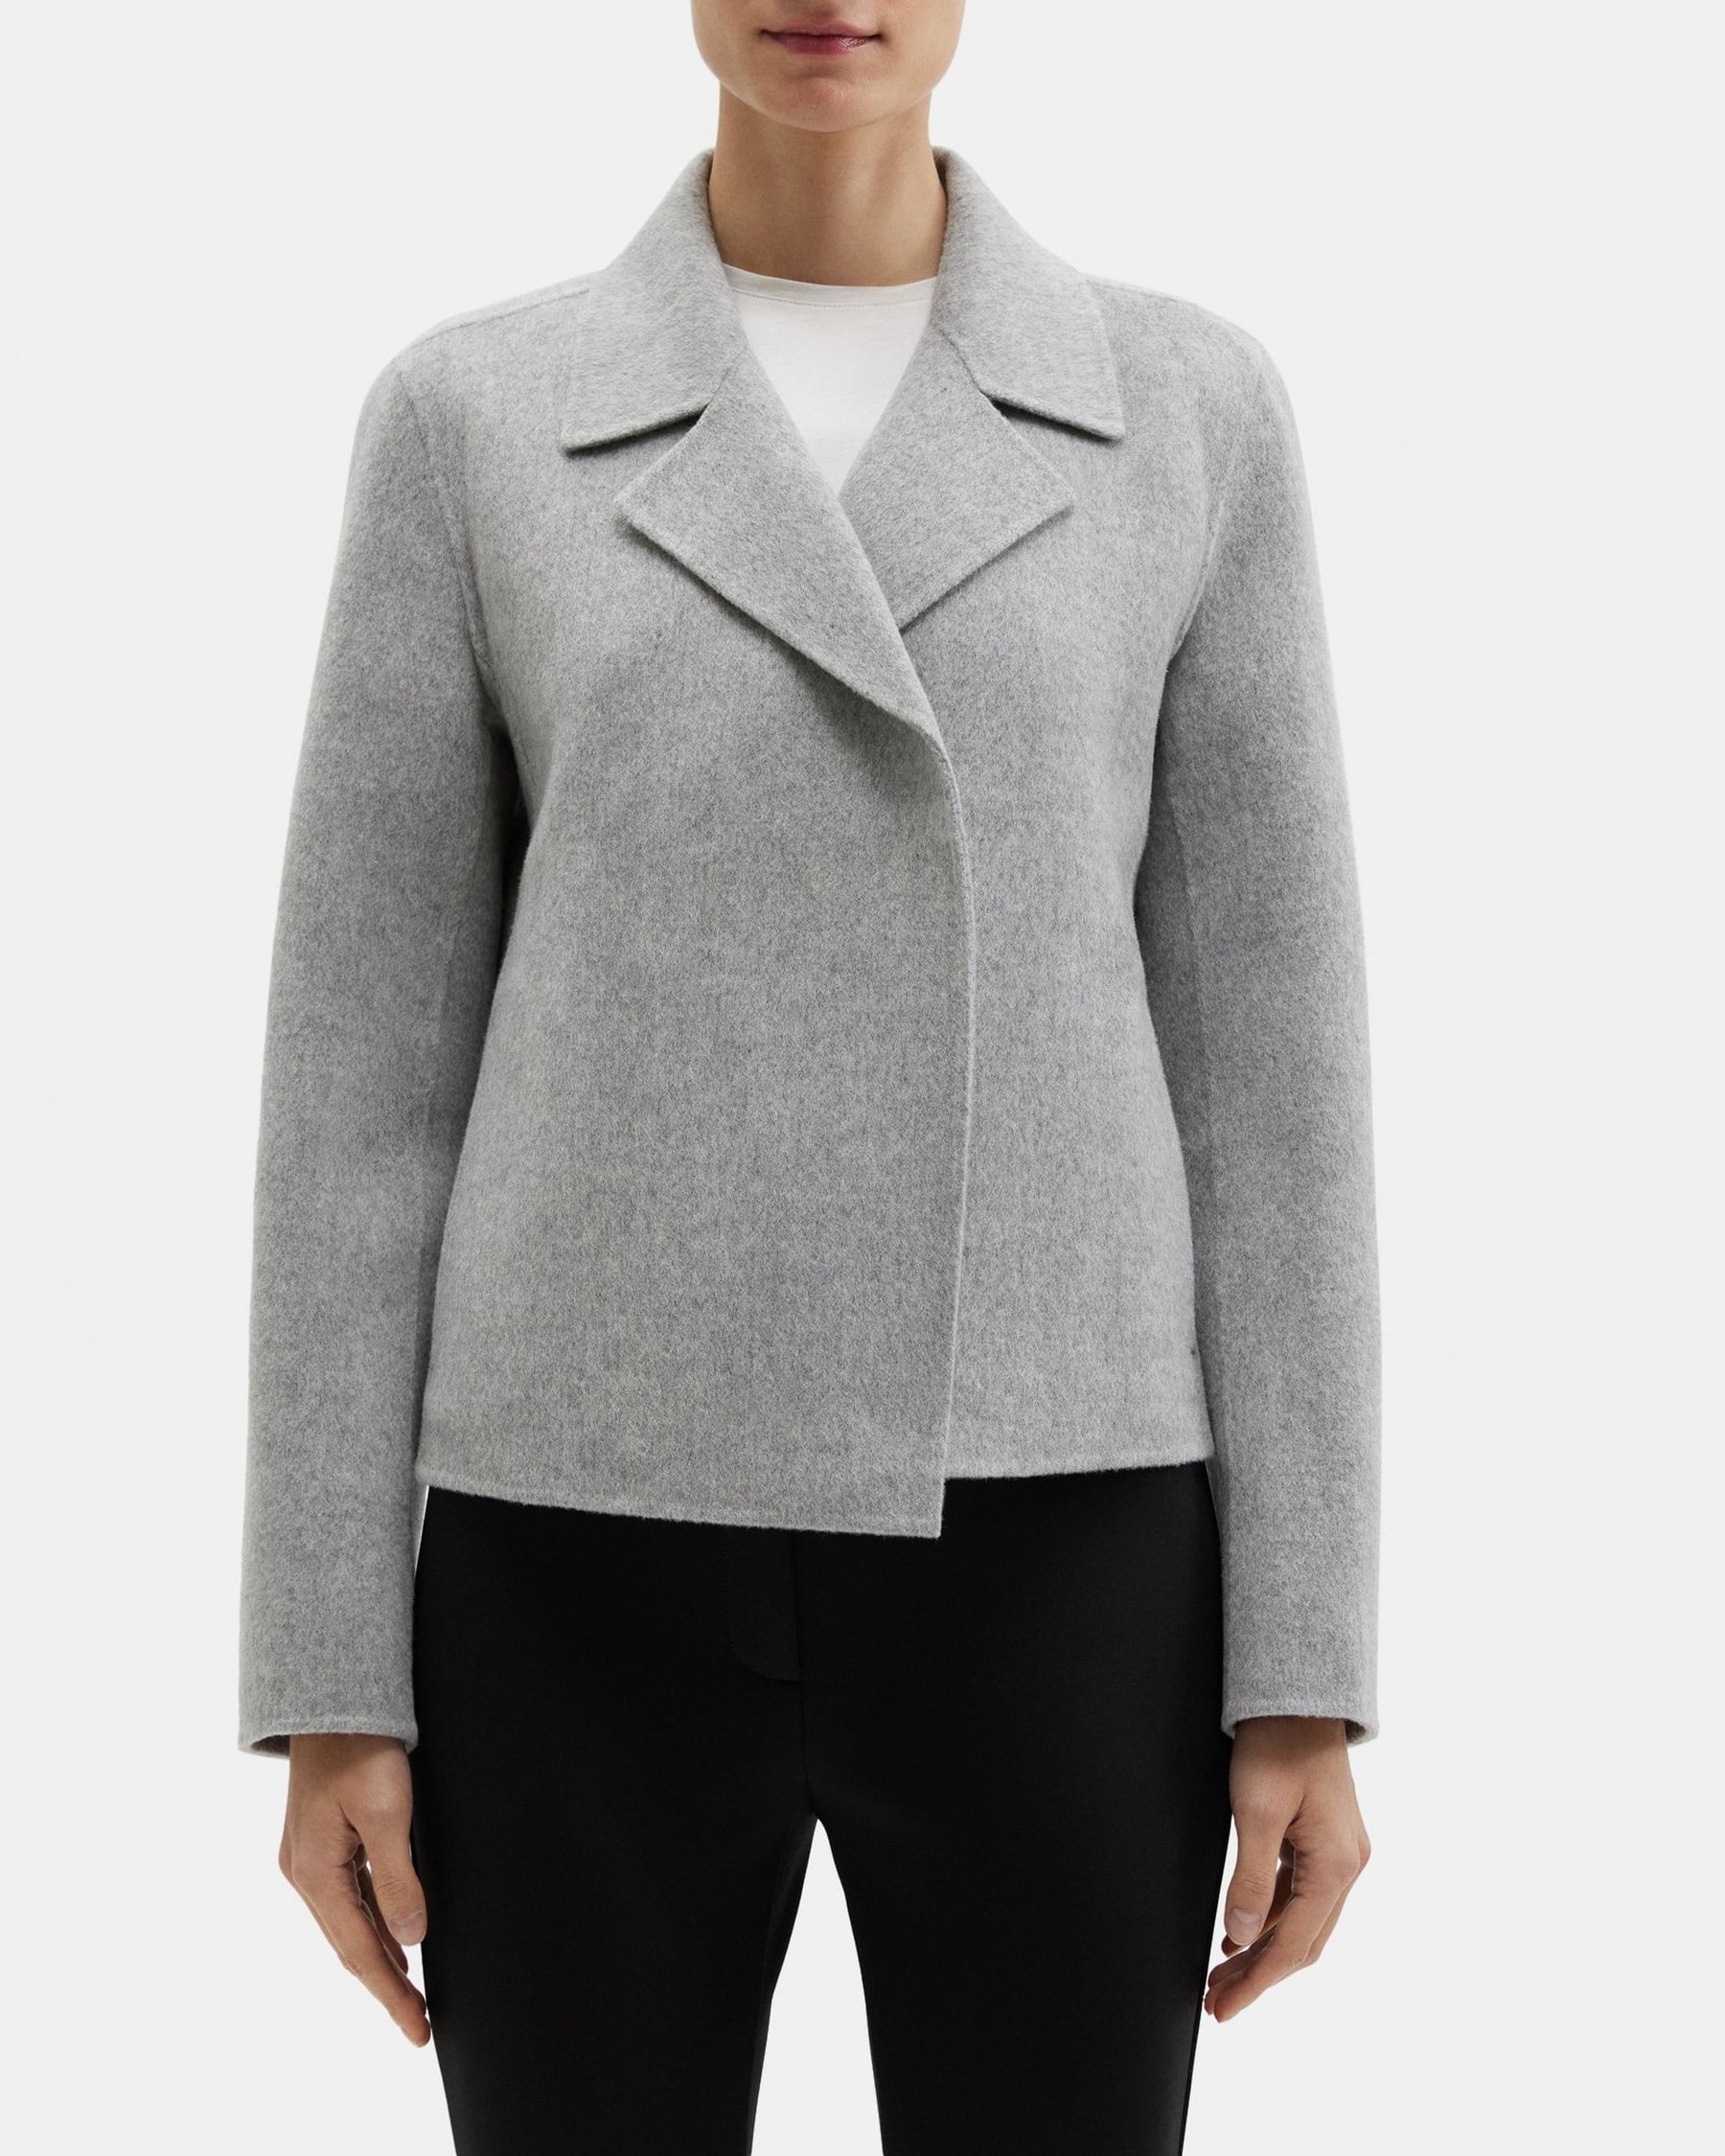 띠어리 Theory Cropped Open Front Jacket in Double-Face Wool-Cashmere,GREY MELANGE